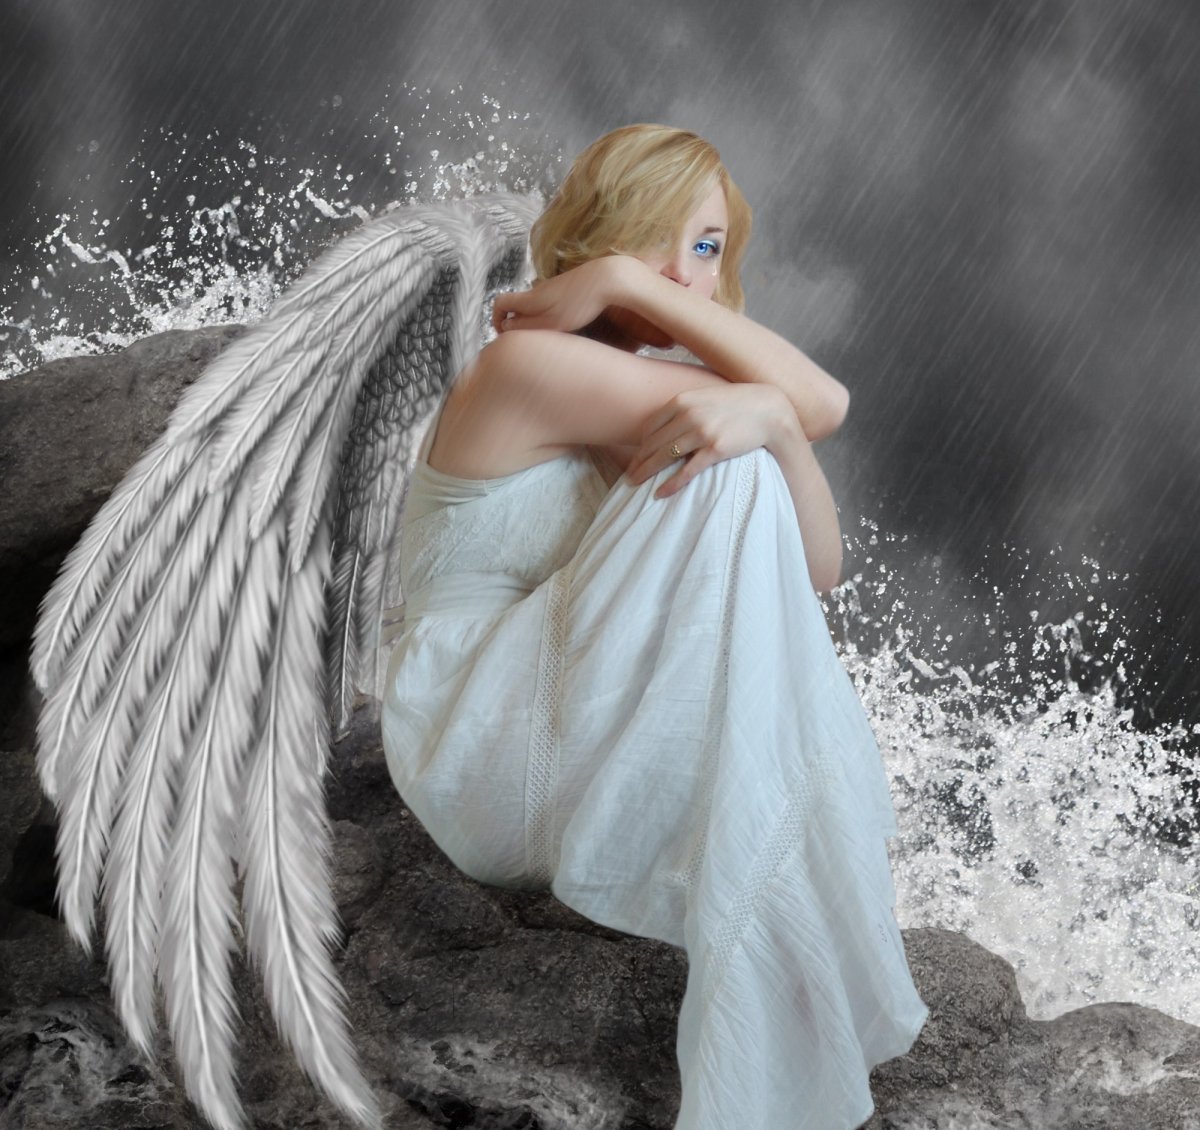 Ангел нежность. Девушка - ангел. Ангел с крыльями. Девушка с крыльями. Девушка с крыльями ангела.